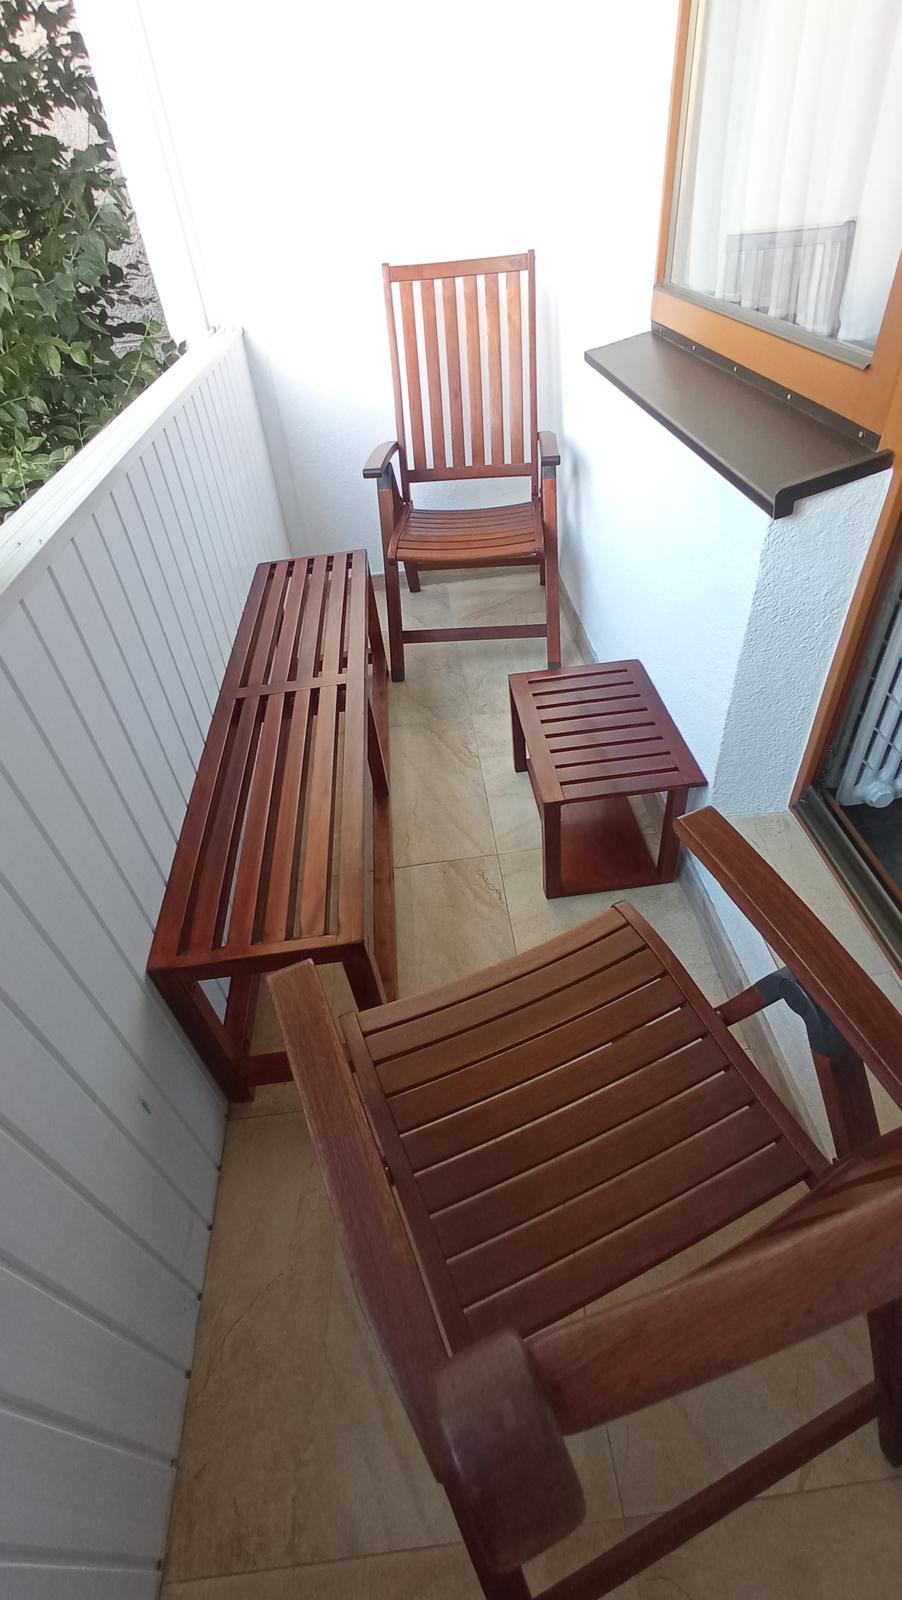 stolička lavička lavica záhradný nábytok balkón terasa - Obrázok č. 1